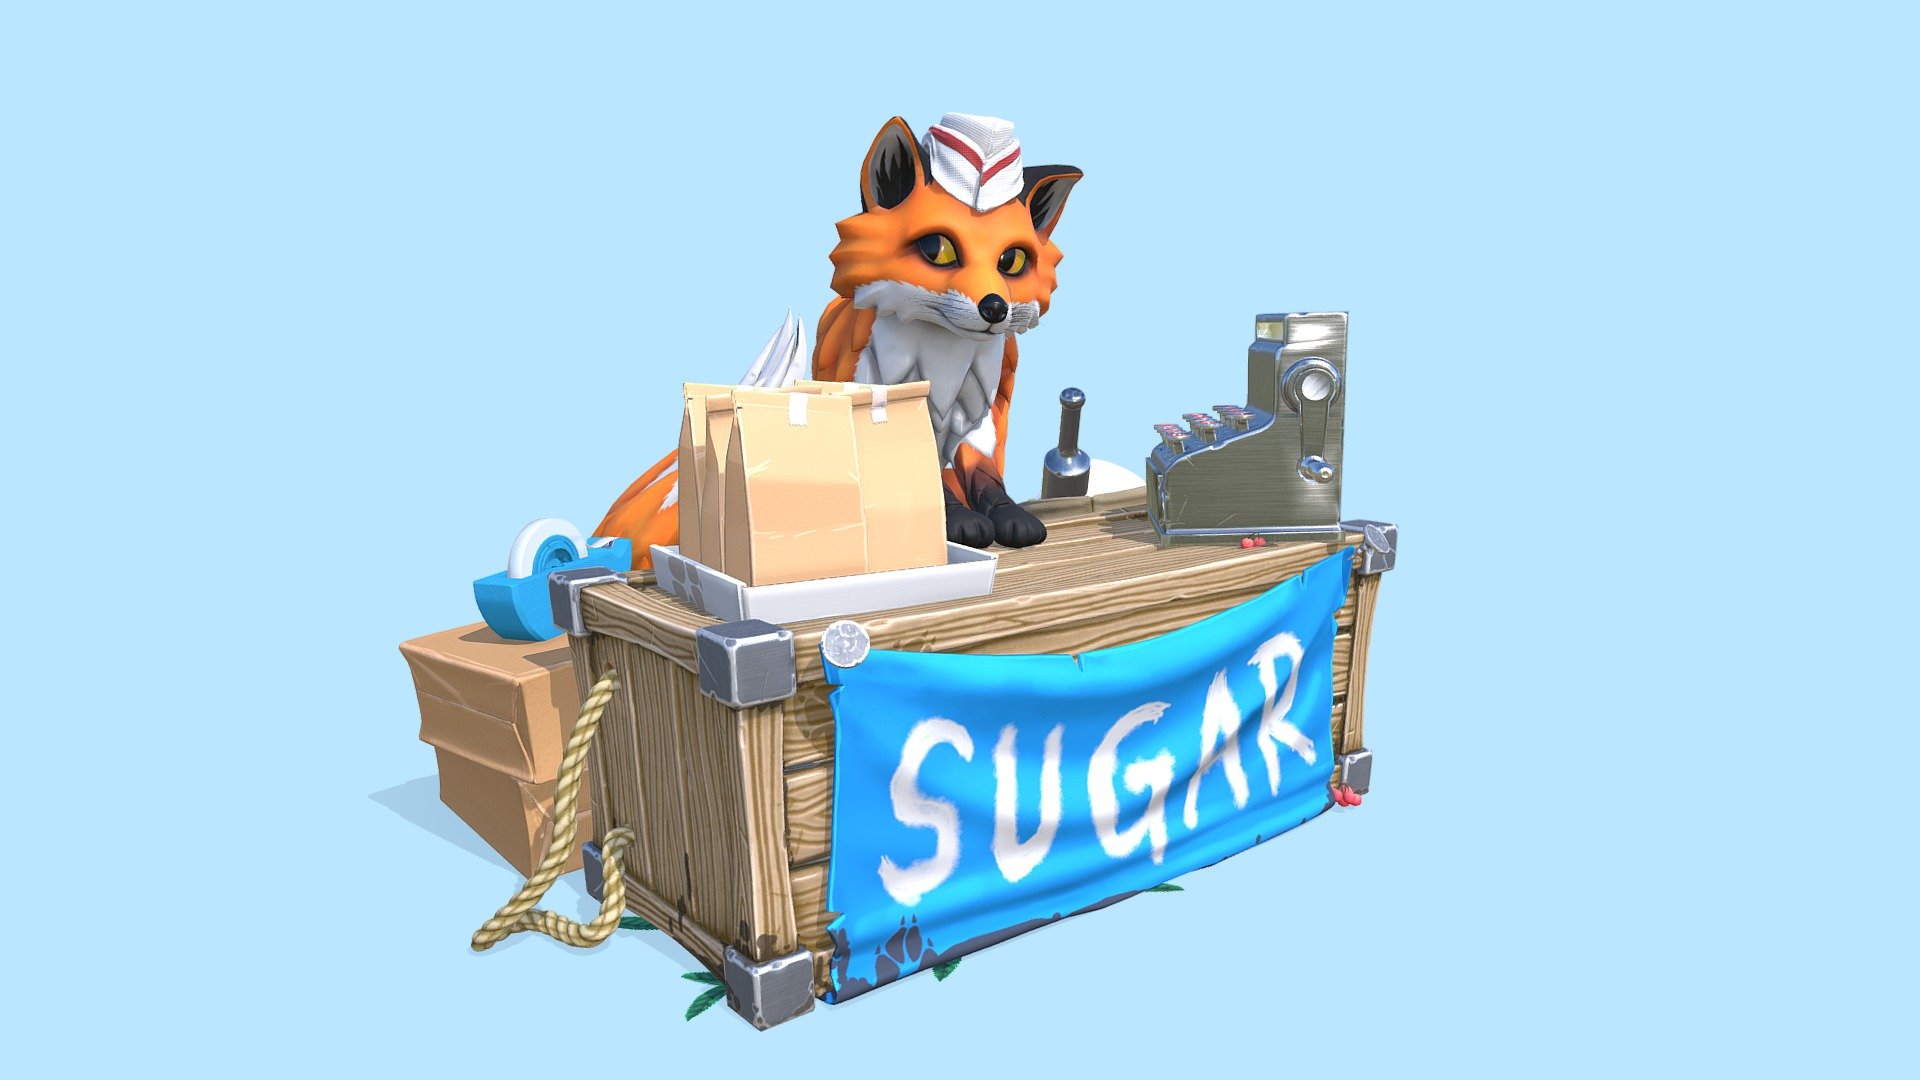 A Fox Selling Sugar